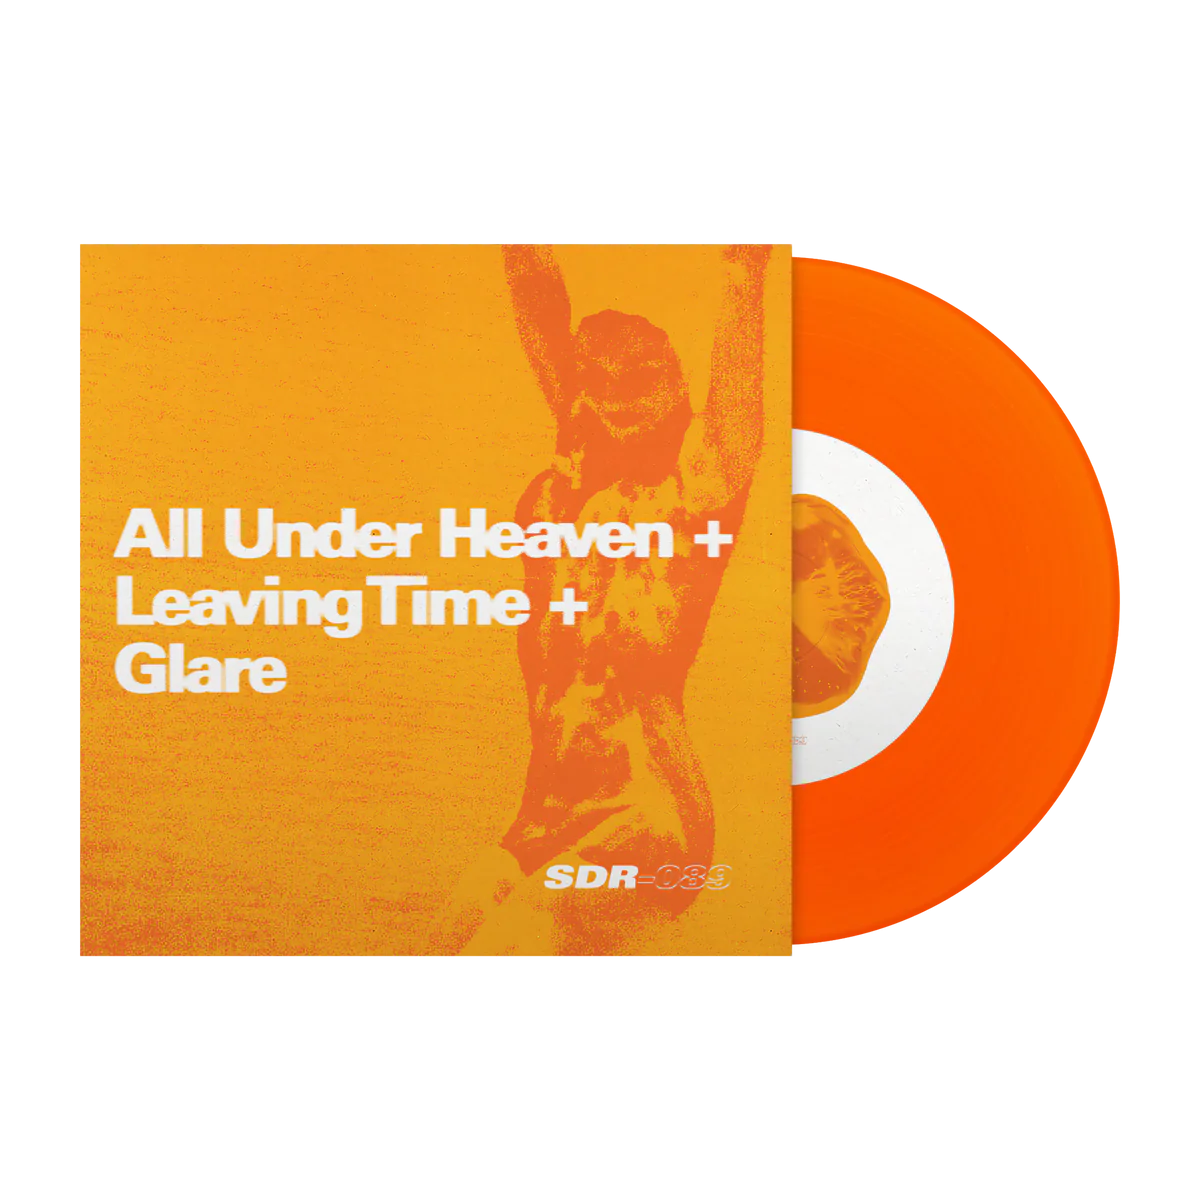 All Under Heaven / Leaving Time / Glare - 'Split'